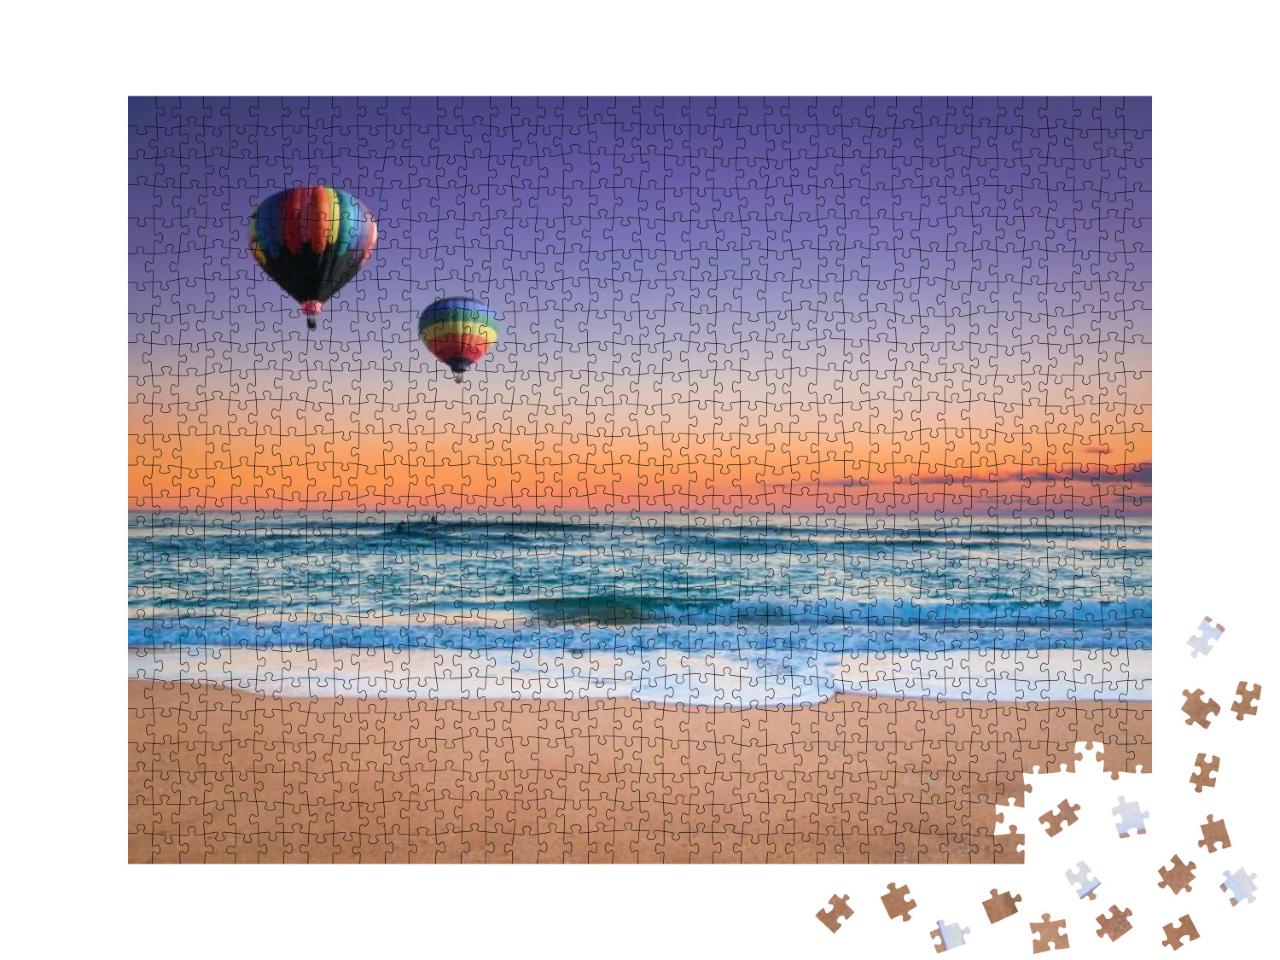 Puzzle 1000 Teile „Heißluftballon über dem Strand von New South Wales, Australien“